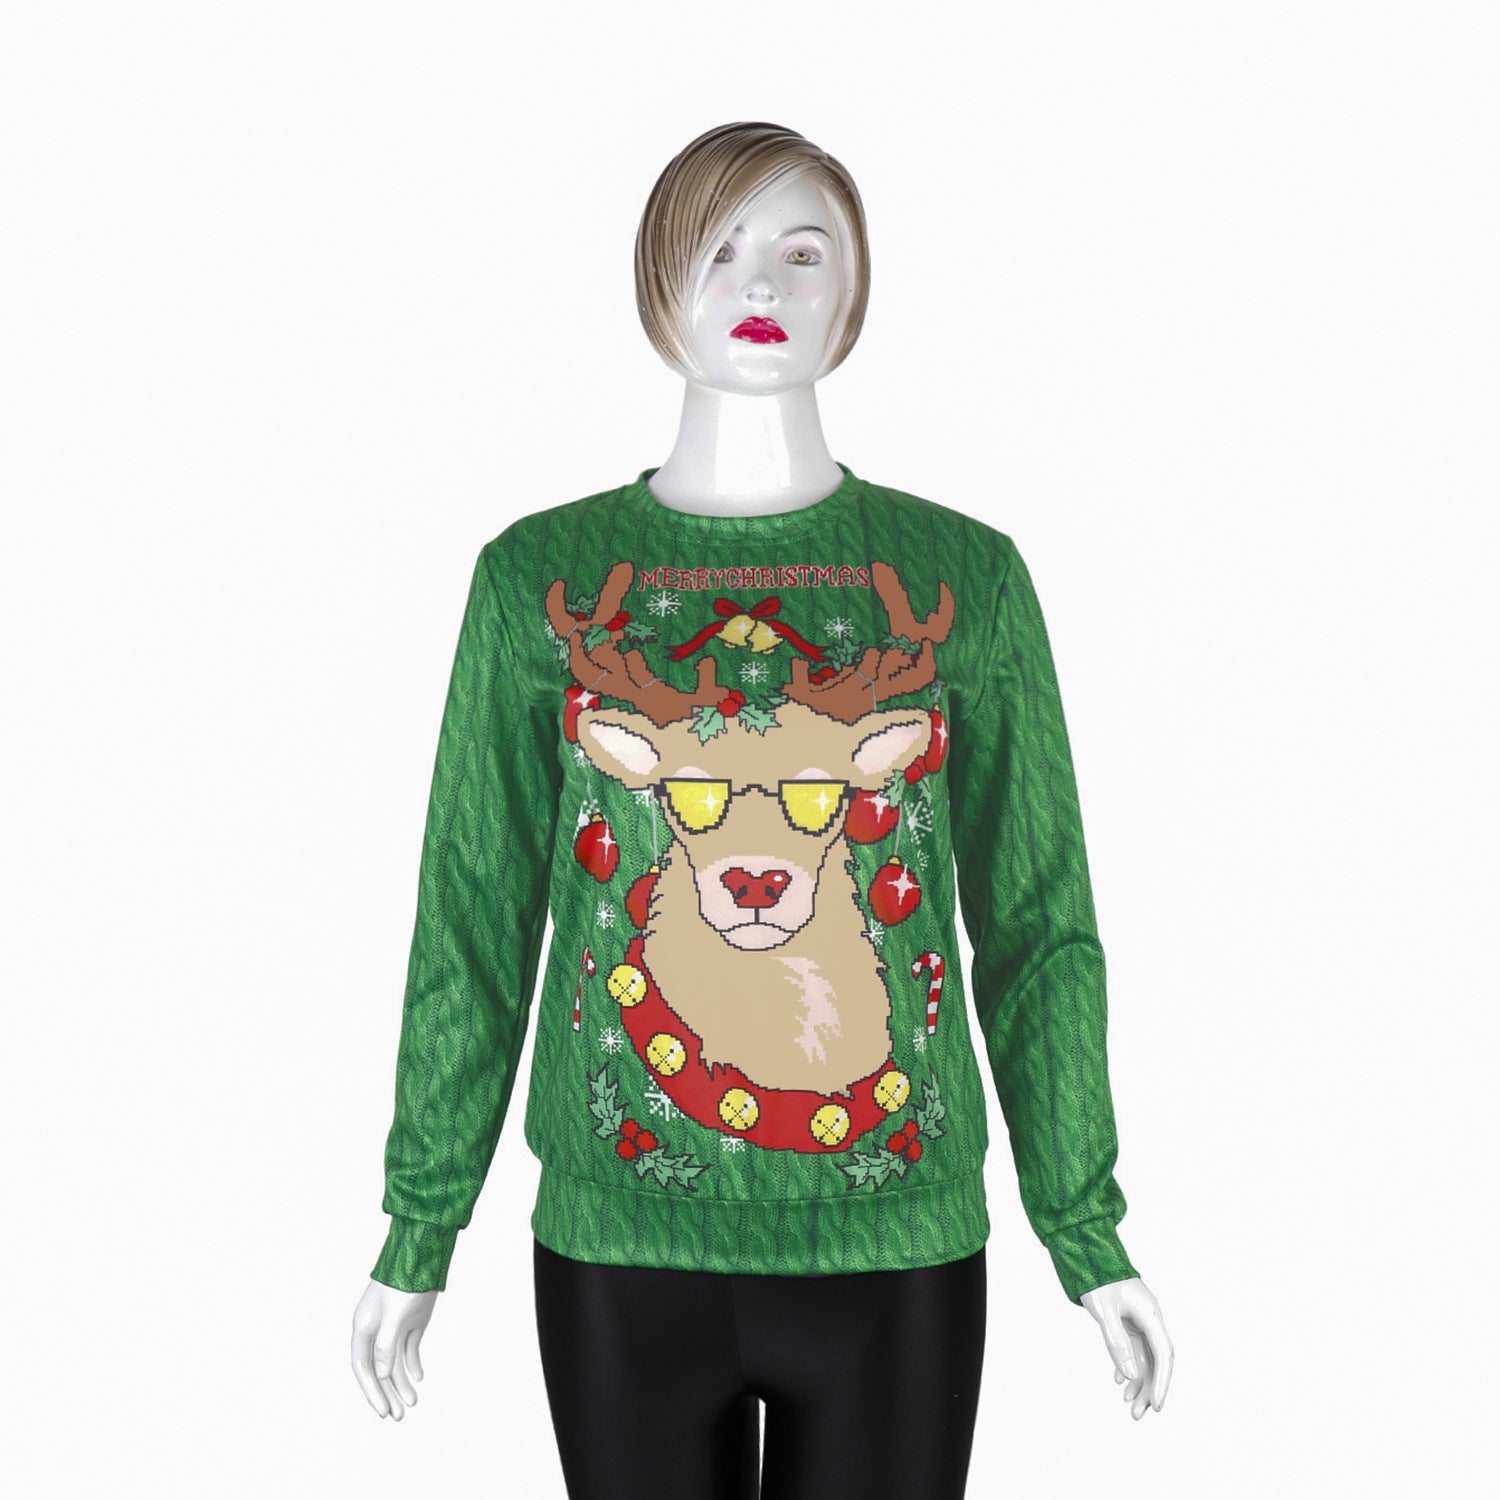 Reindeer Digital Print Women Christmas Party Sweatshirt